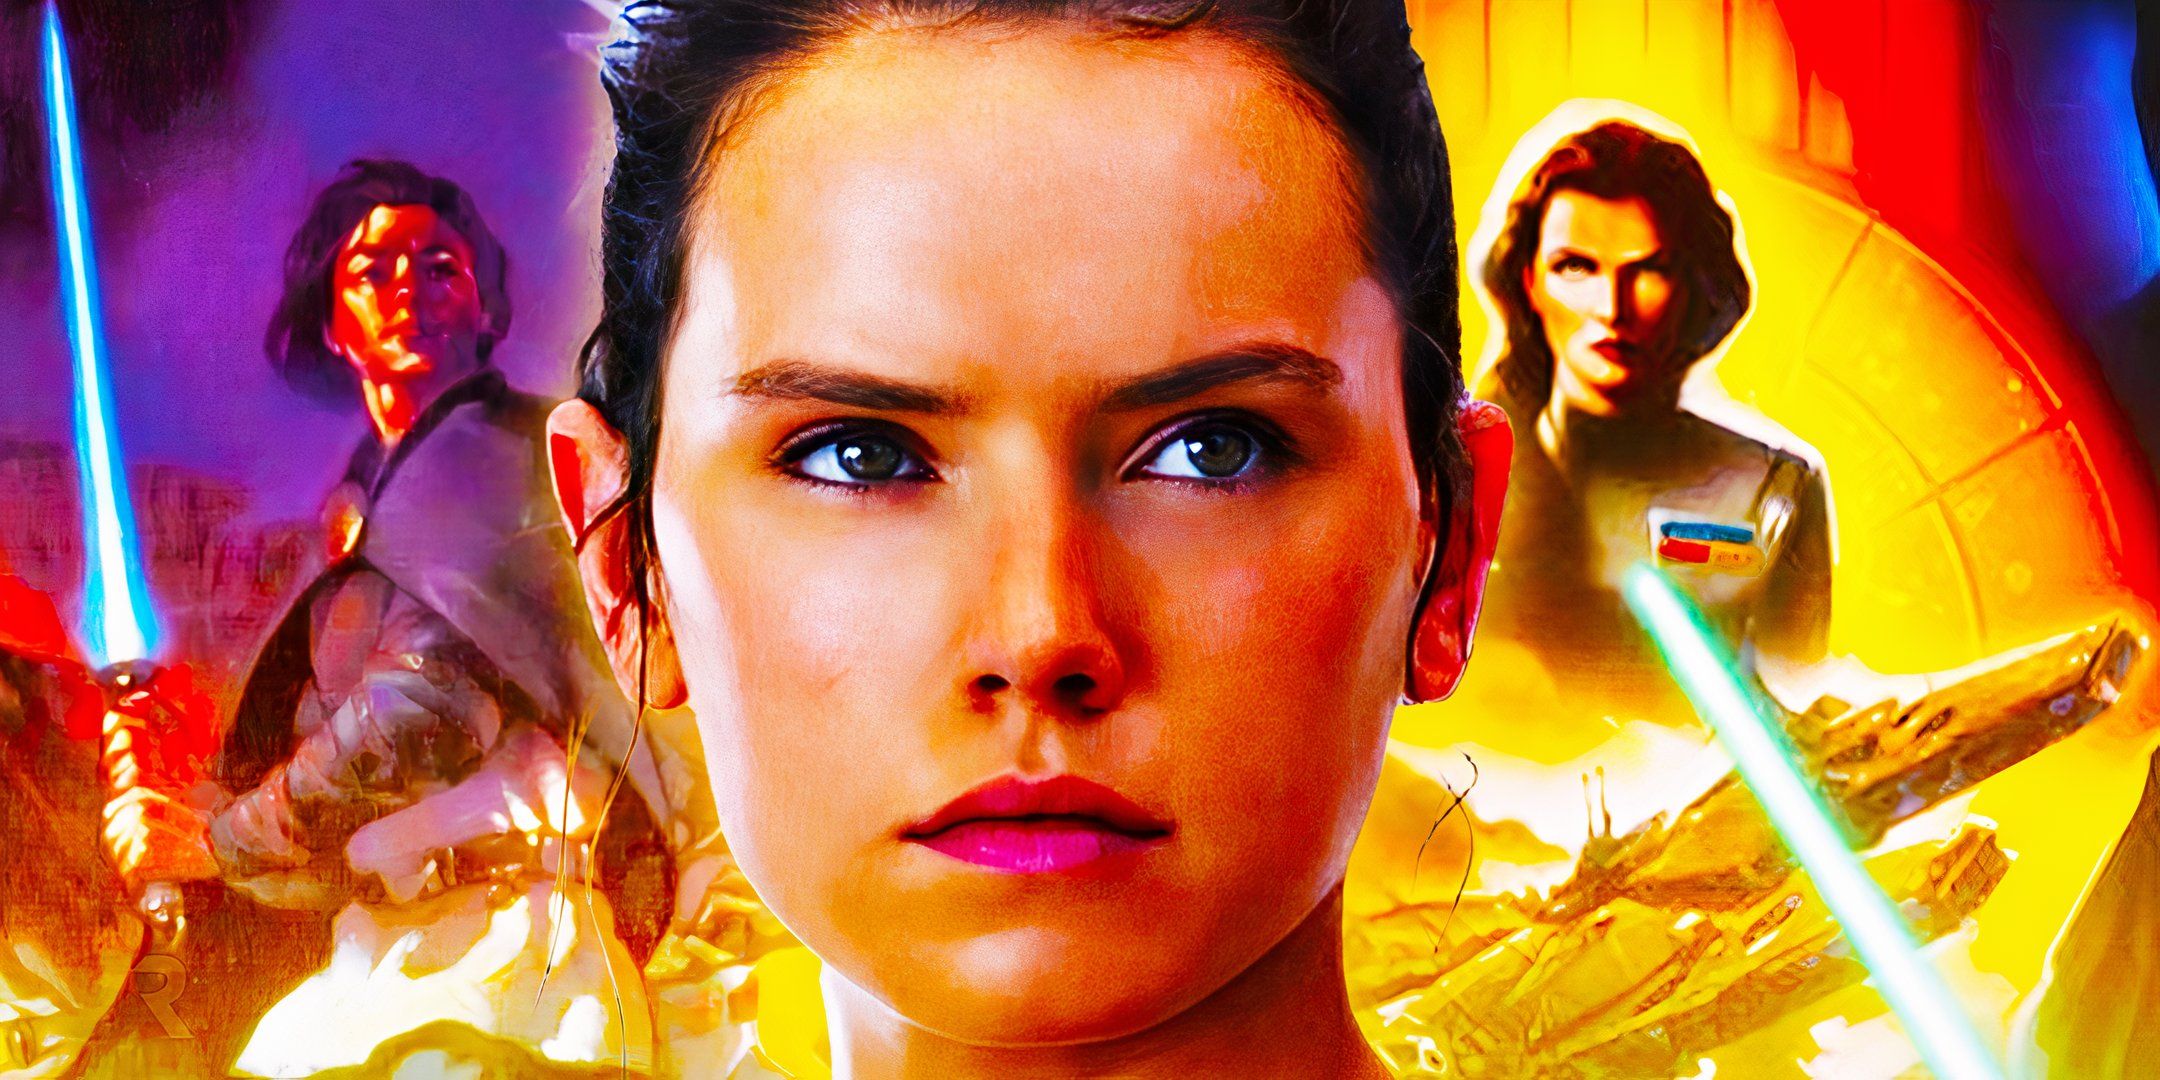 La nueva película de Star Wars de Rey podría finalmente traer de vuelta una idea clásica de los Jedi Legends